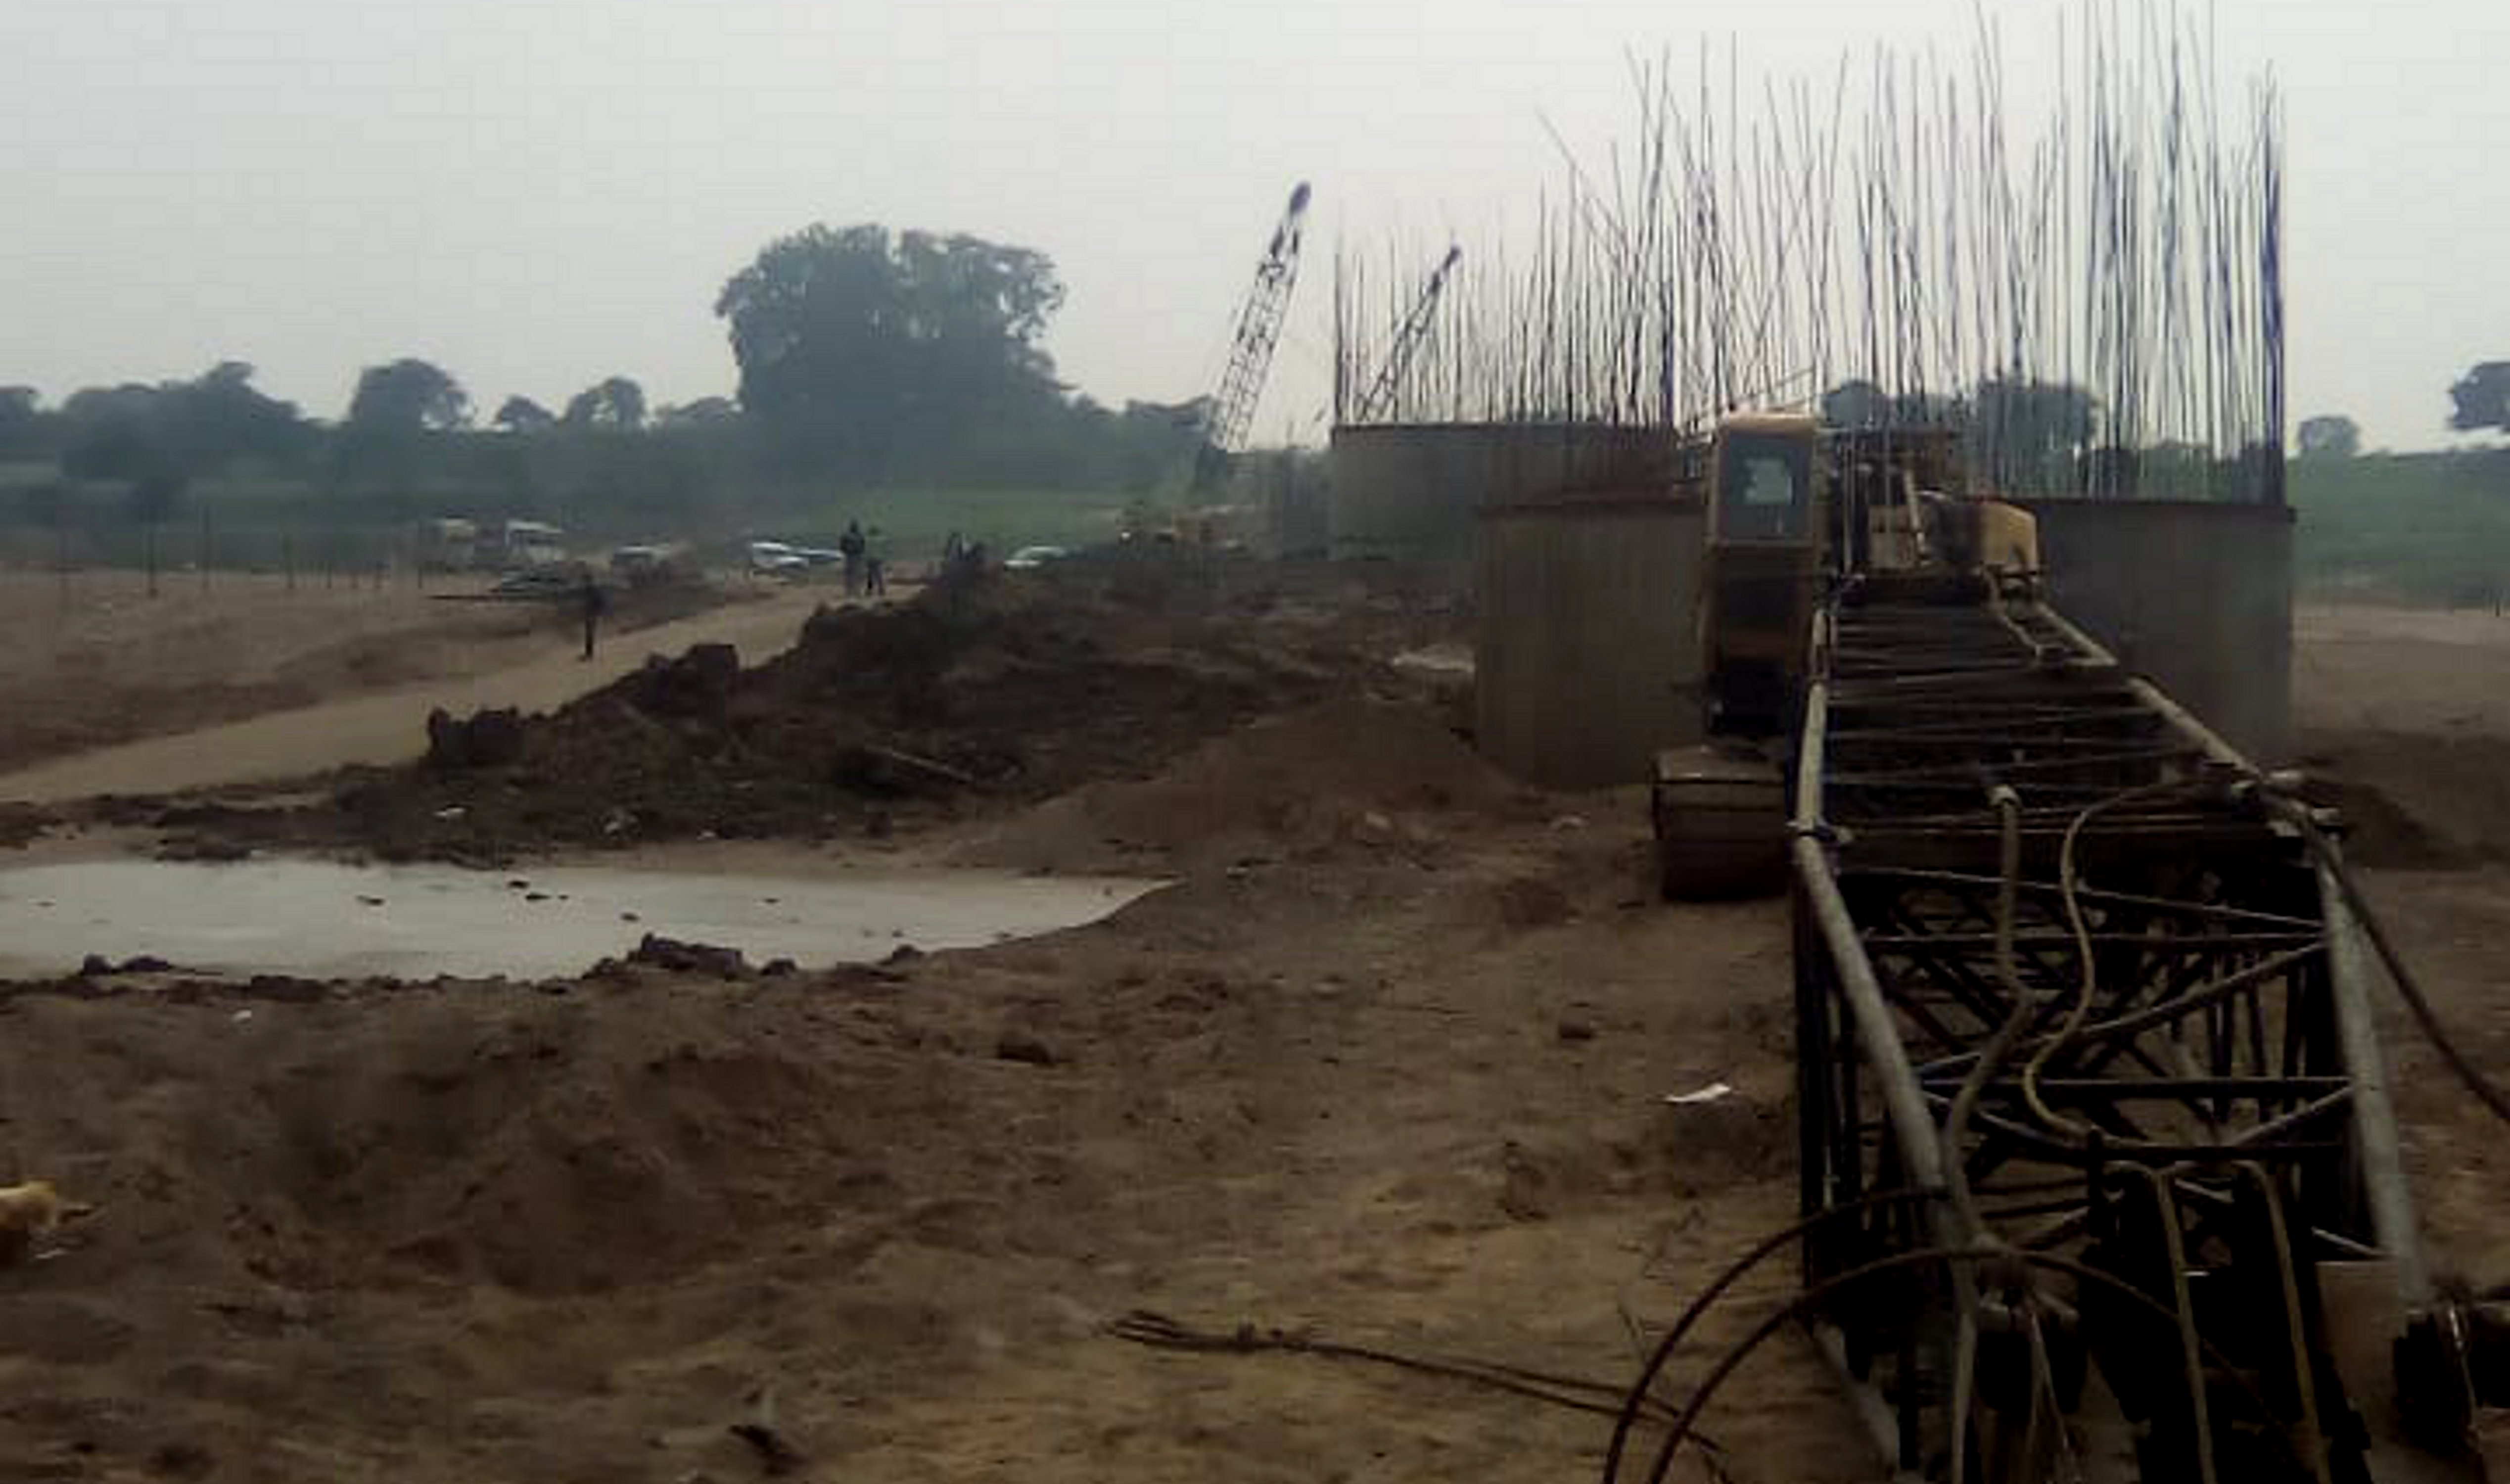  80 करोड़ रुपए की लागत से चंबल नदी के उसेदघाट पर 800 मीटर लंबे और 12 मीटर चौड़े पुल का निर्माण कार्य लंबी कवायद के बाद बीते साल शुरू हुआ है।